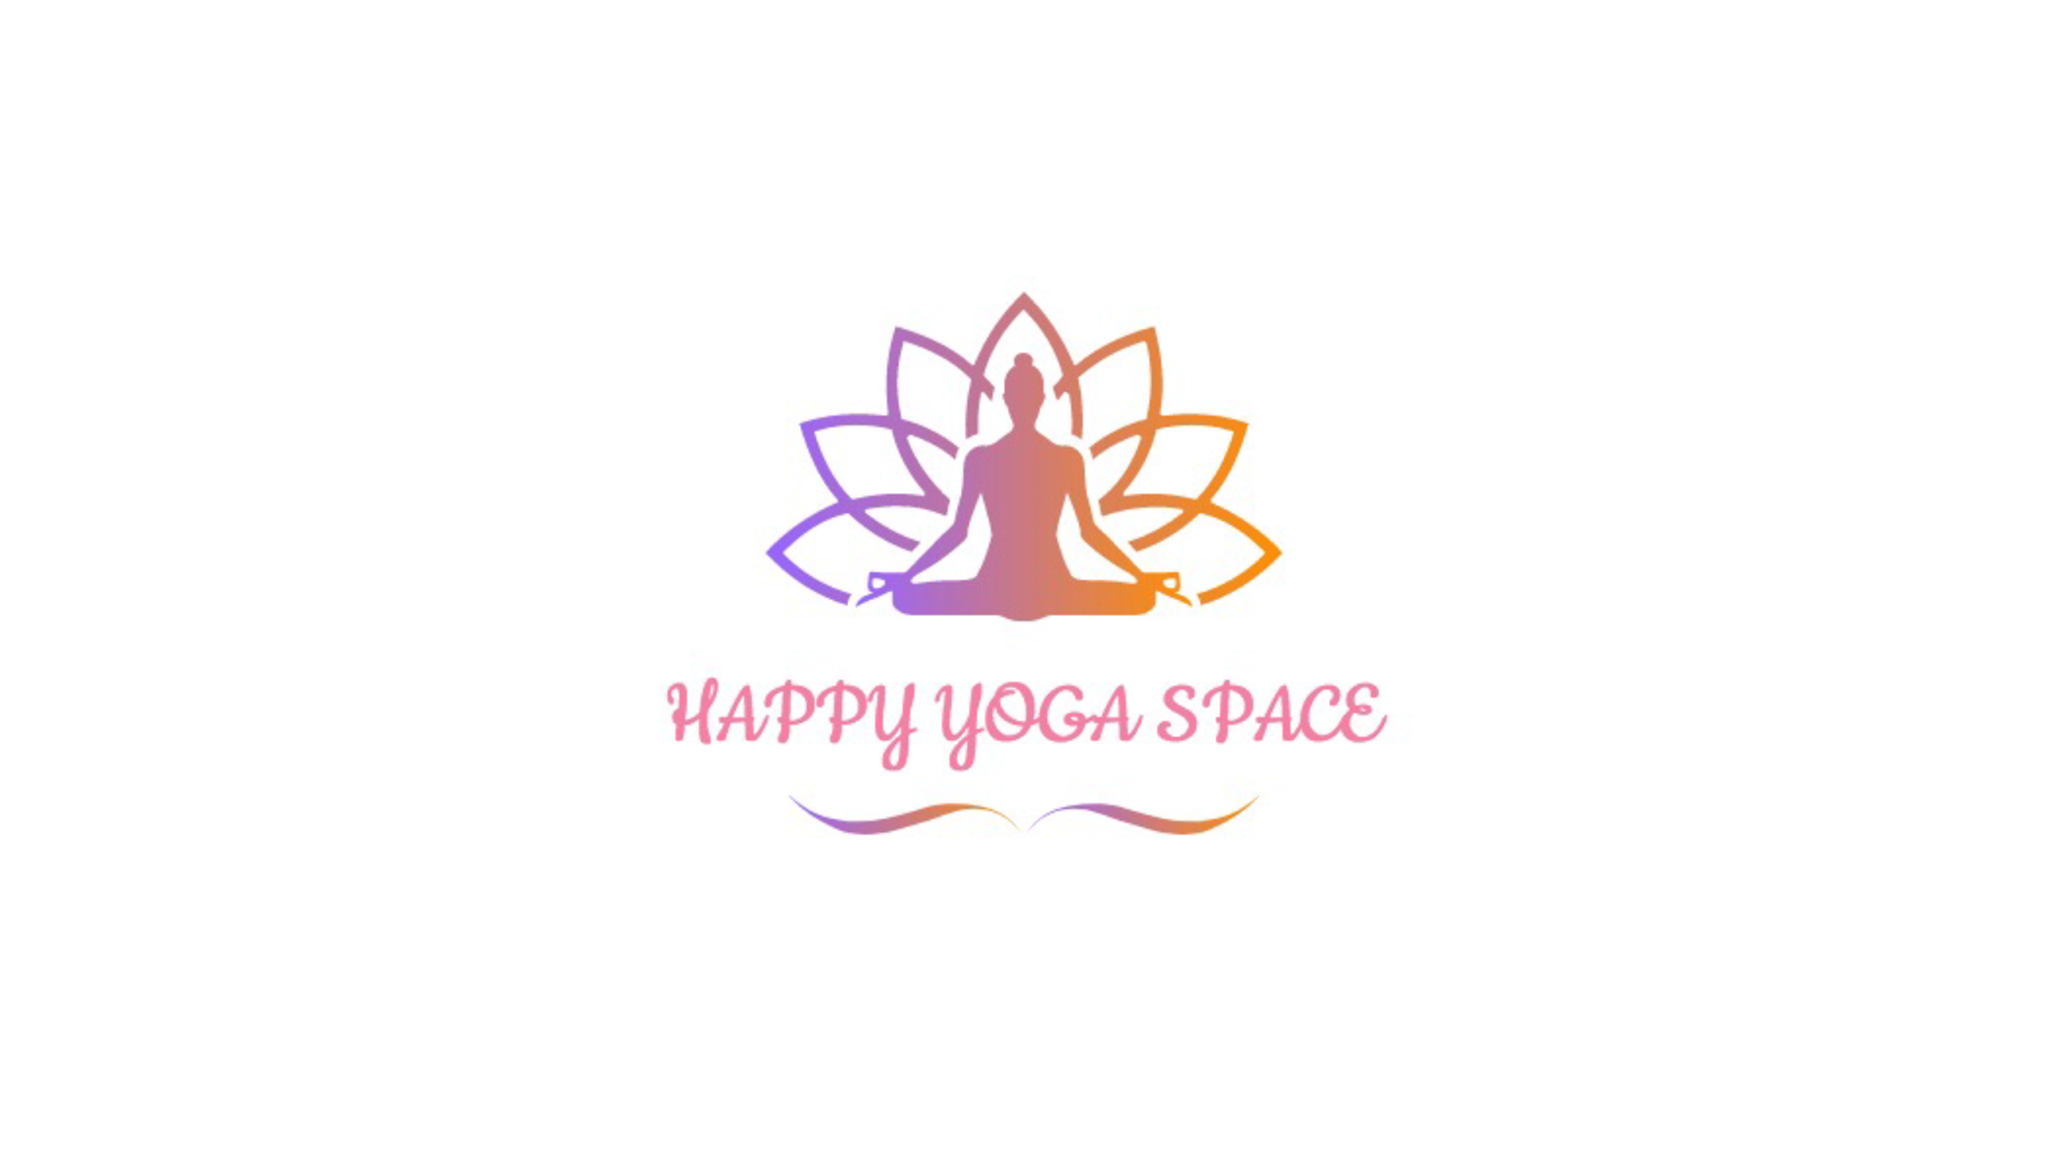 Happy Yoga Space